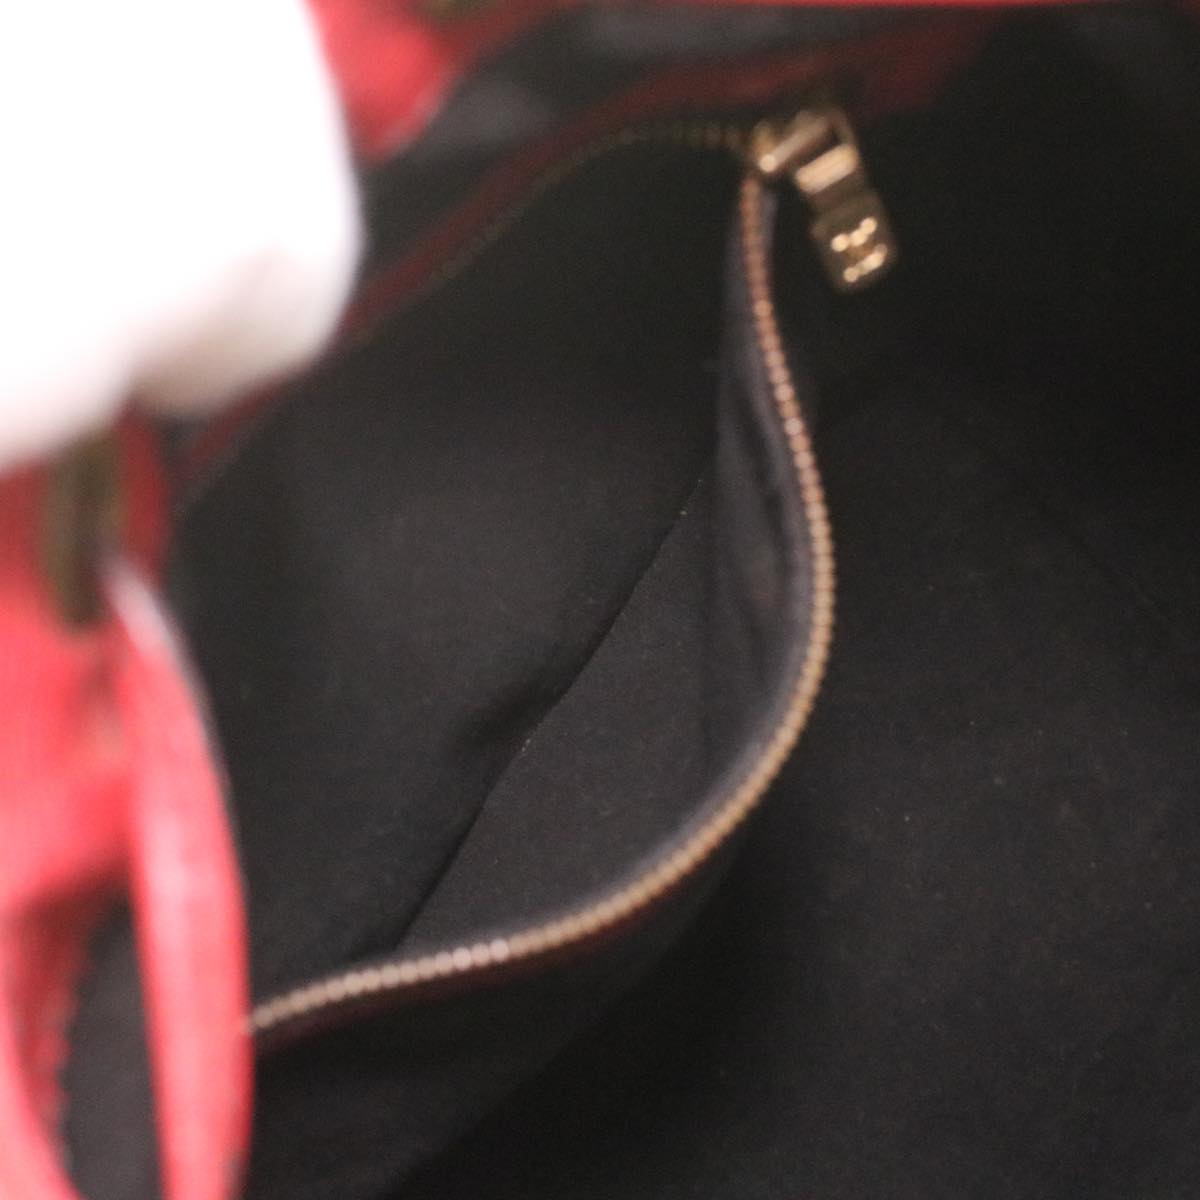 LOUIS VUITTON Epi Noe Shoulder Bag Red M44007 LV Auth 36004